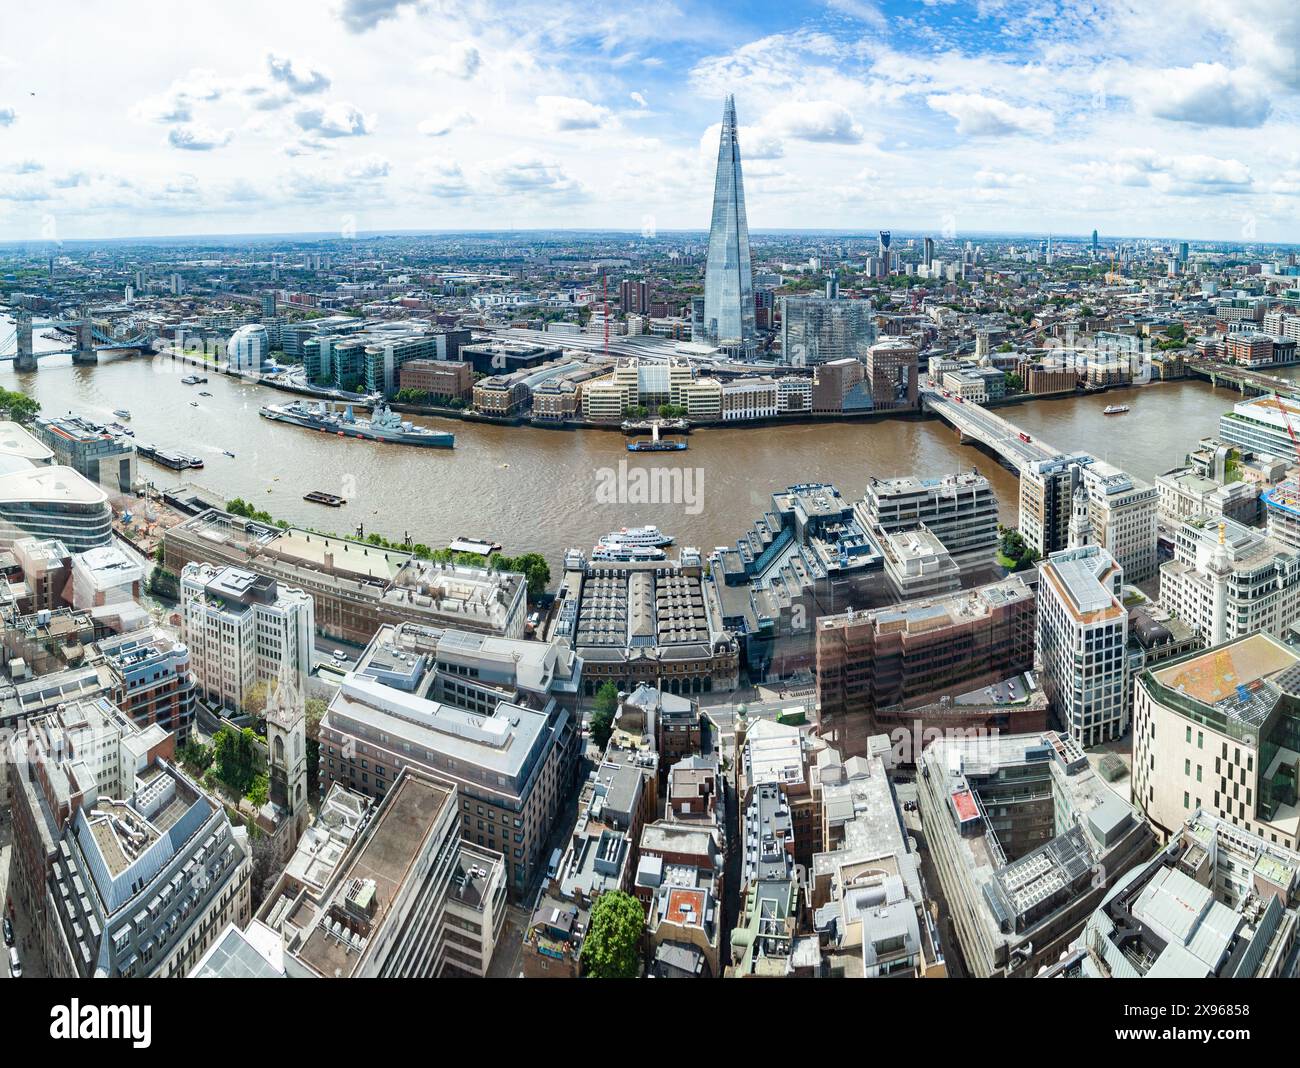 Vue aérienne du sud de Londres, y compris London Bridge, le gratte-ciel Shard et la Tamise, Londres, Angleterre, Royaume-Uni, Europe Banque D'Images